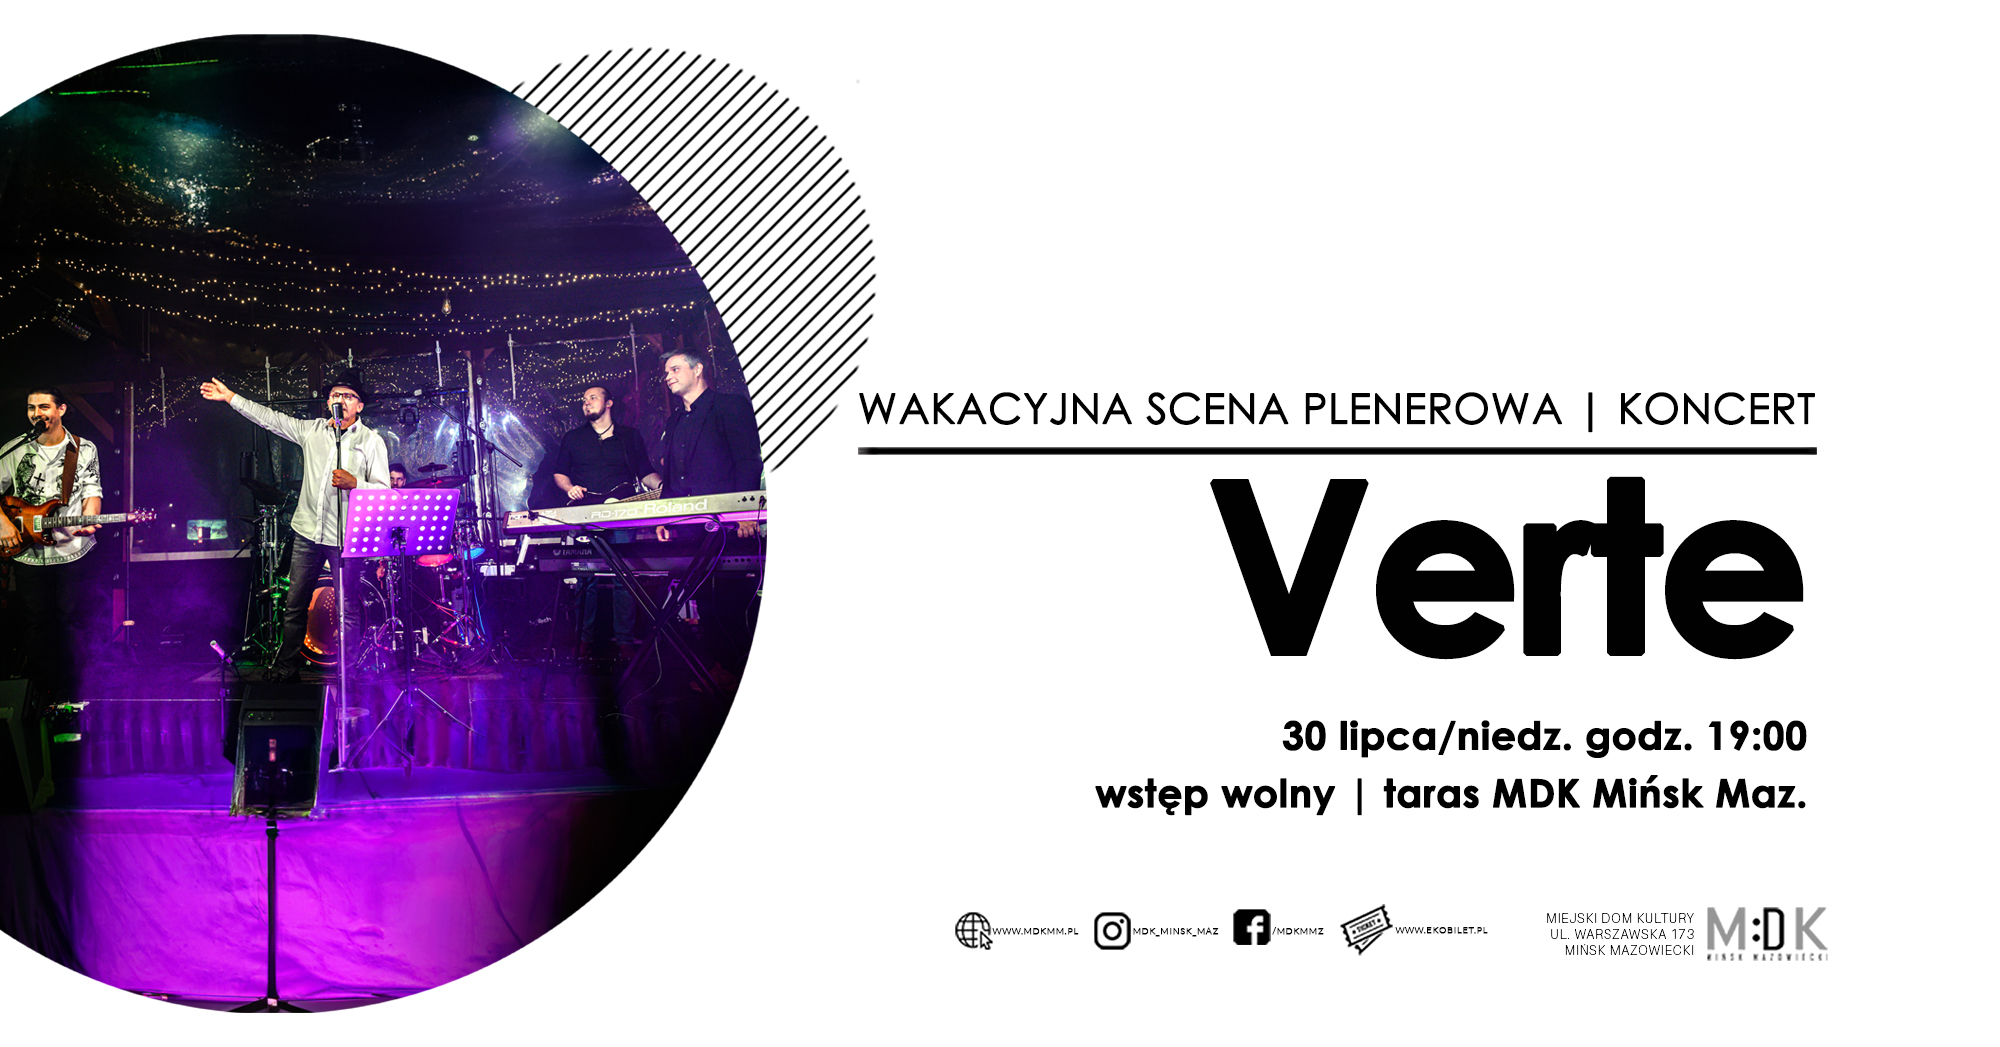 Wakacyjna scena plenerowa | koncert zespołu Verte